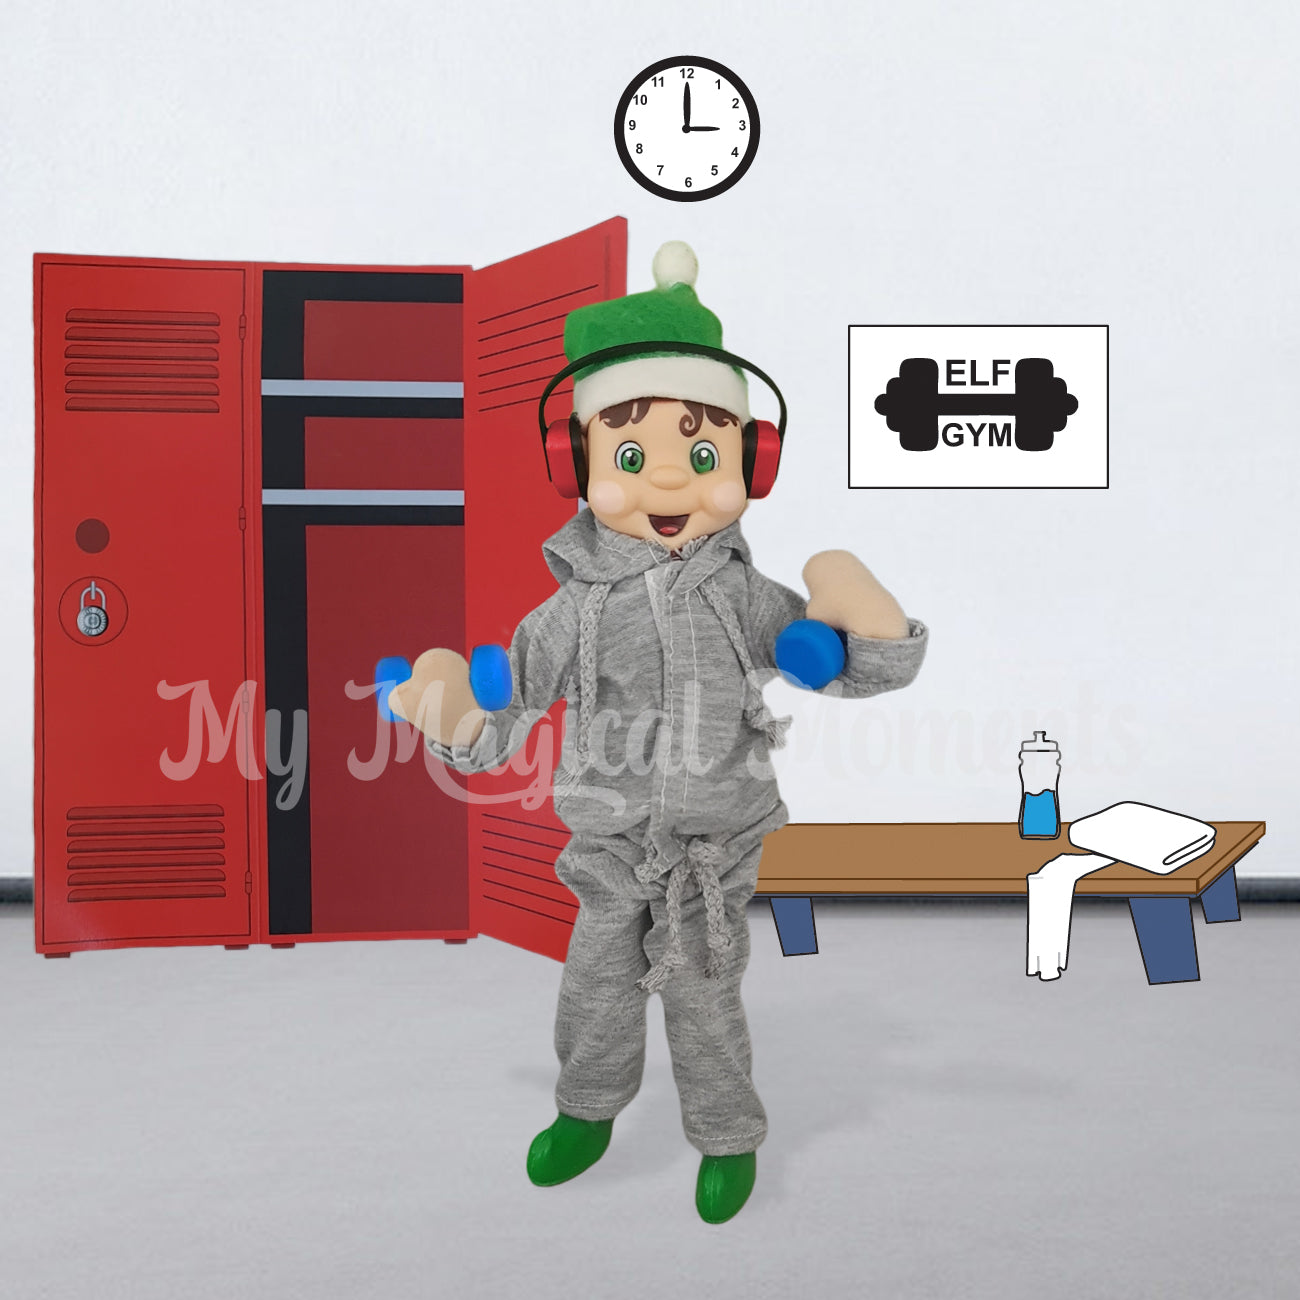 elf dressed in gym equipment in a locker room printable